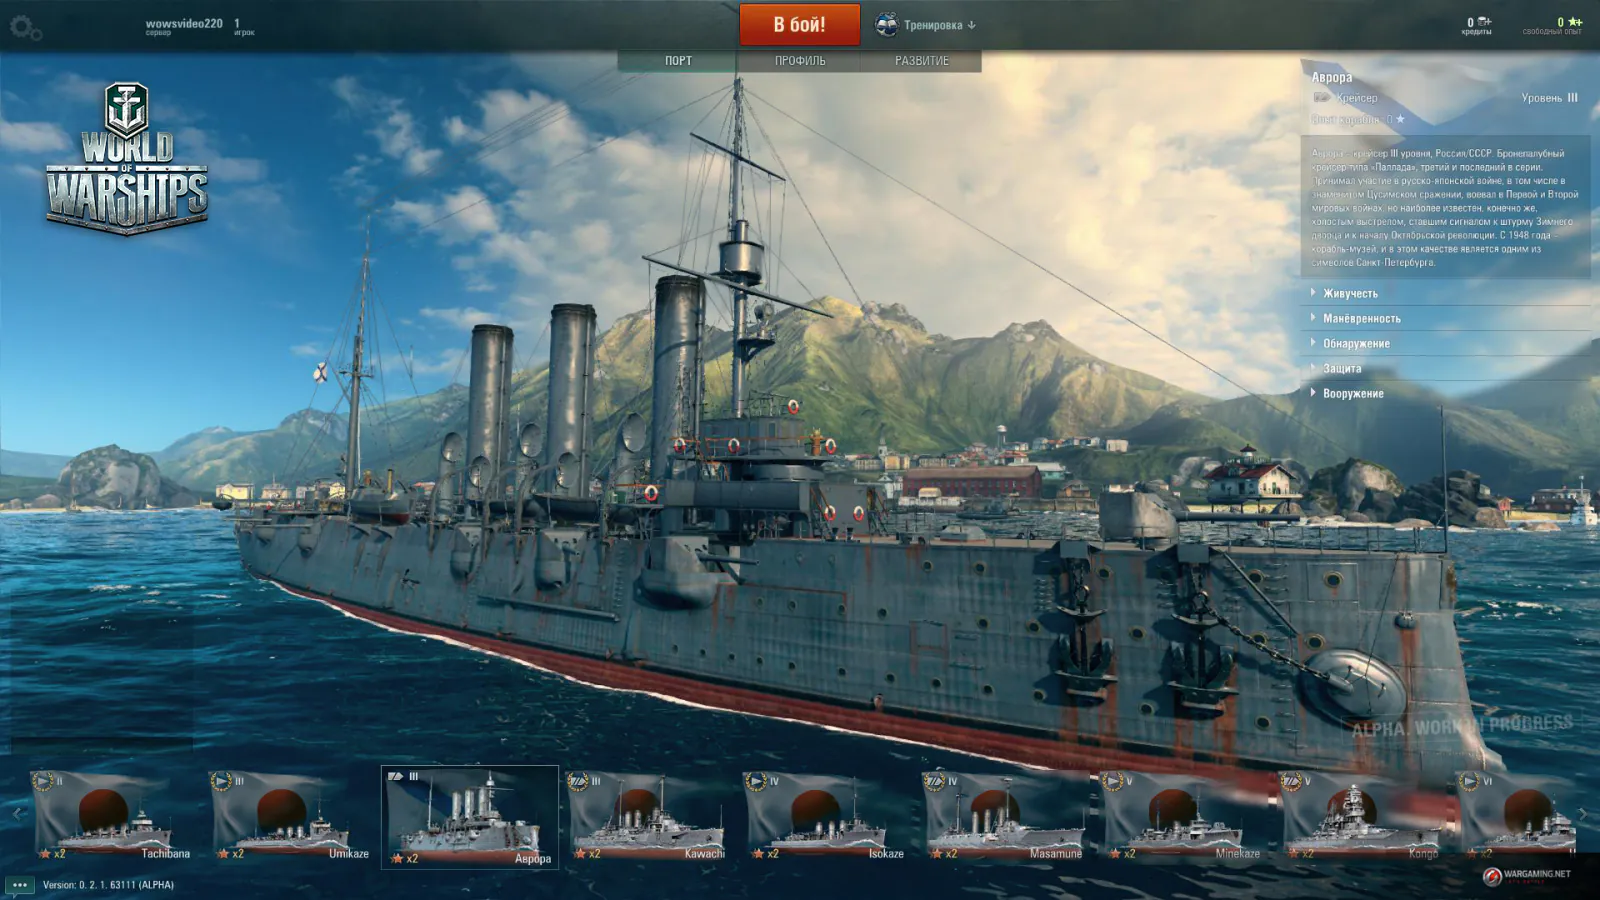 World of Warships image 0